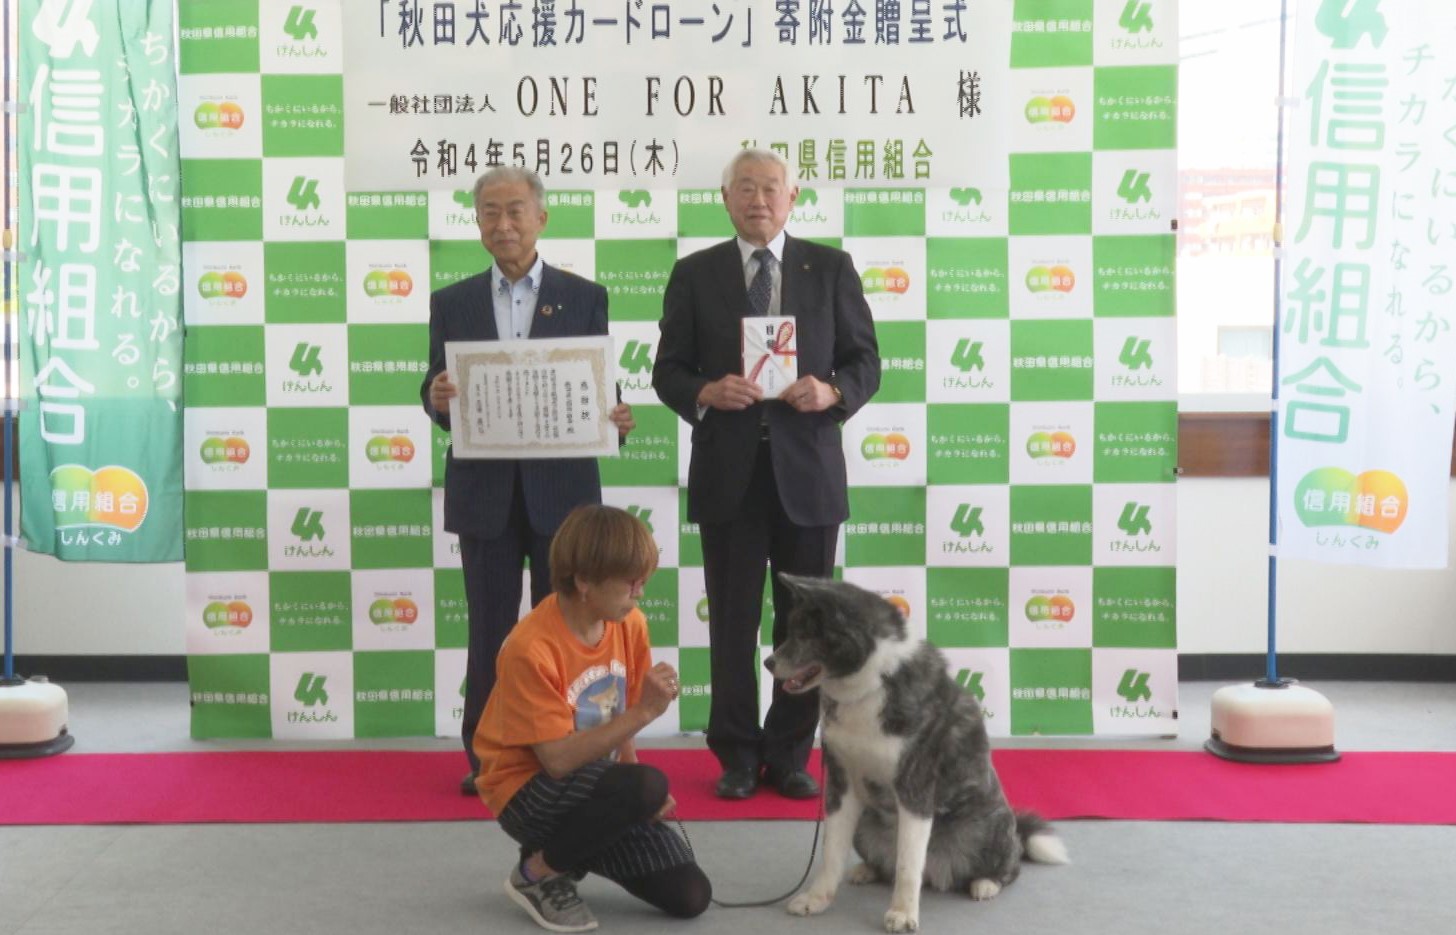 5月26日(木)、秋田県信用組合様より寄付金を受贈いたしました。